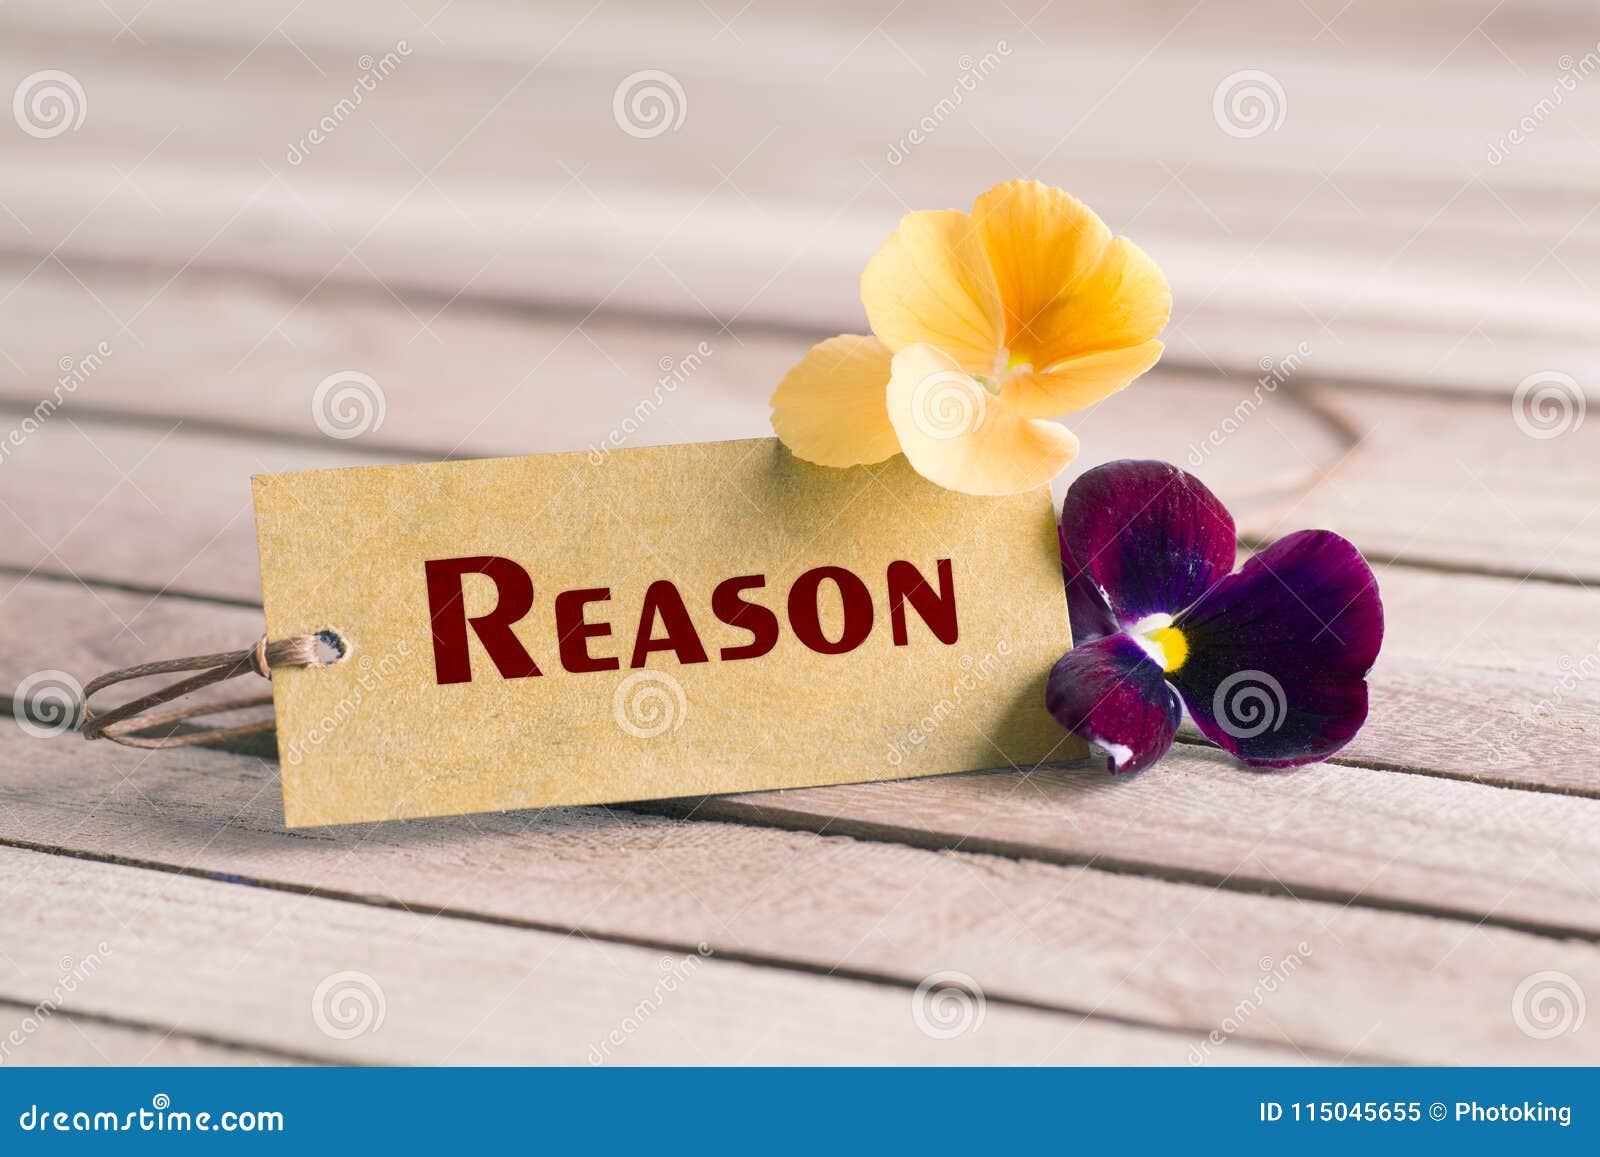 reason tag